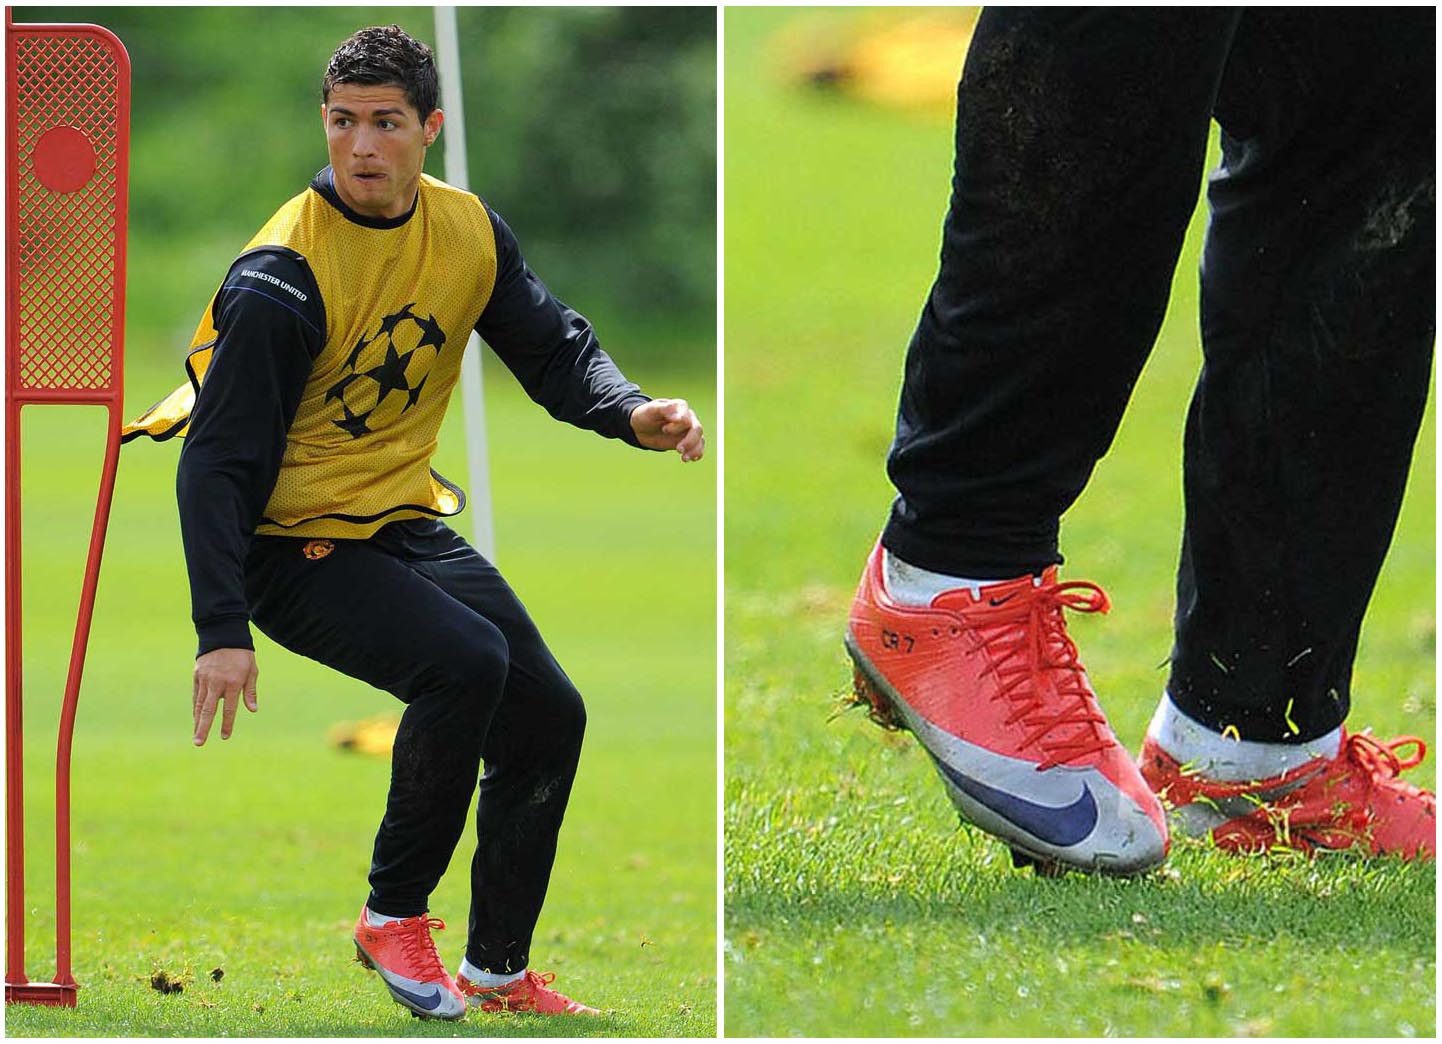 Giày Nike Mercurial Superfly I trên chân của Ronaldo CR7 vào những năm 2009